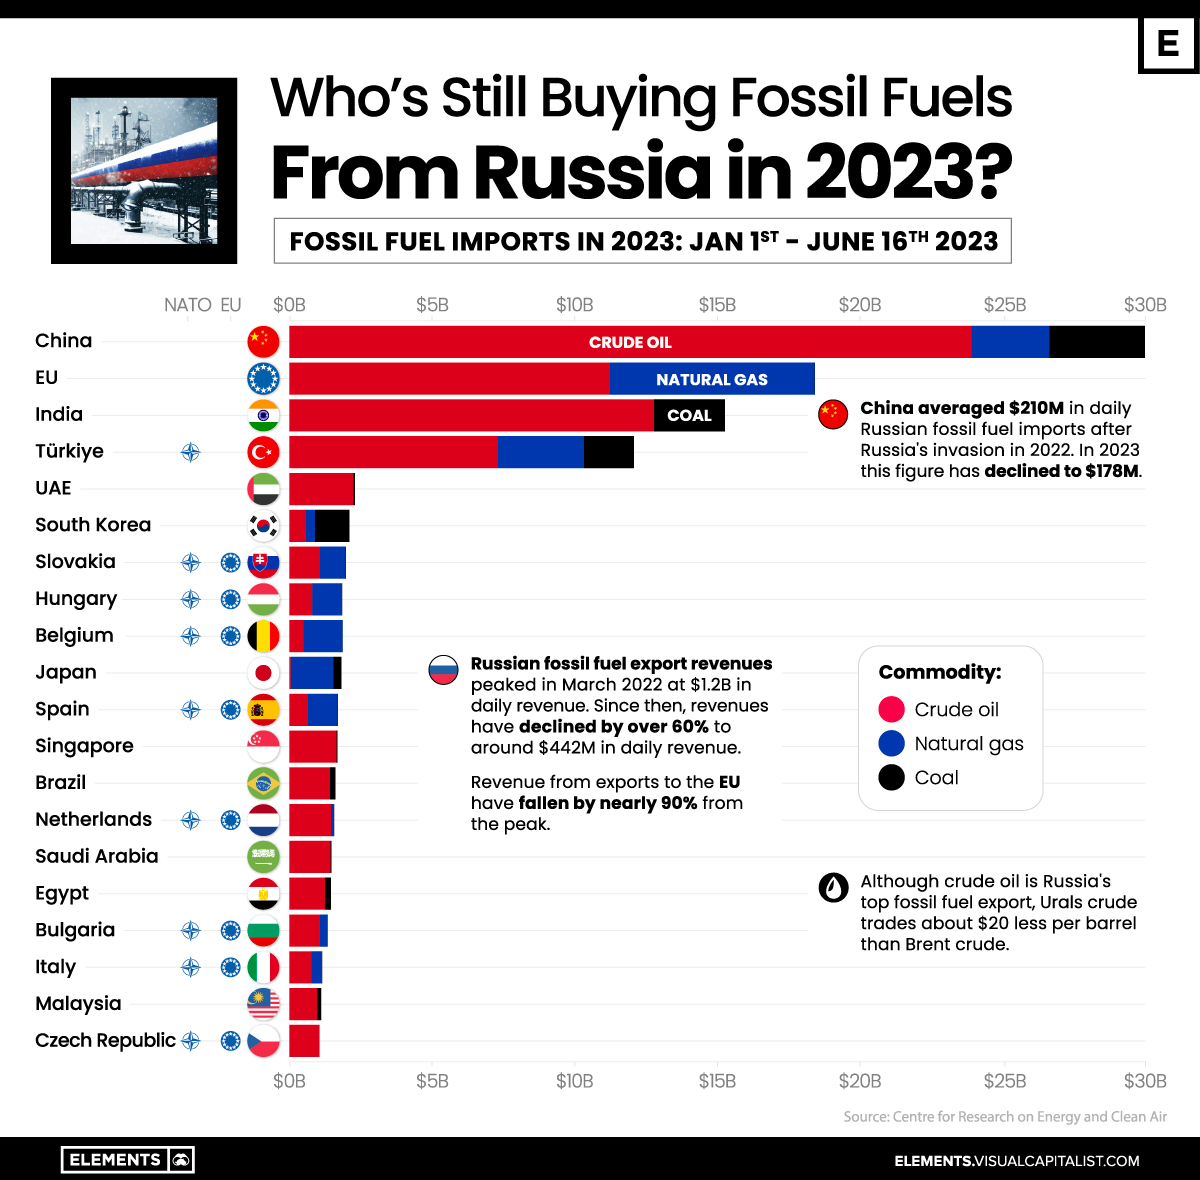 VCE-Whos-Still-Buying-Russian-Fossil-Fuels-in-2023__Jun30.jpg